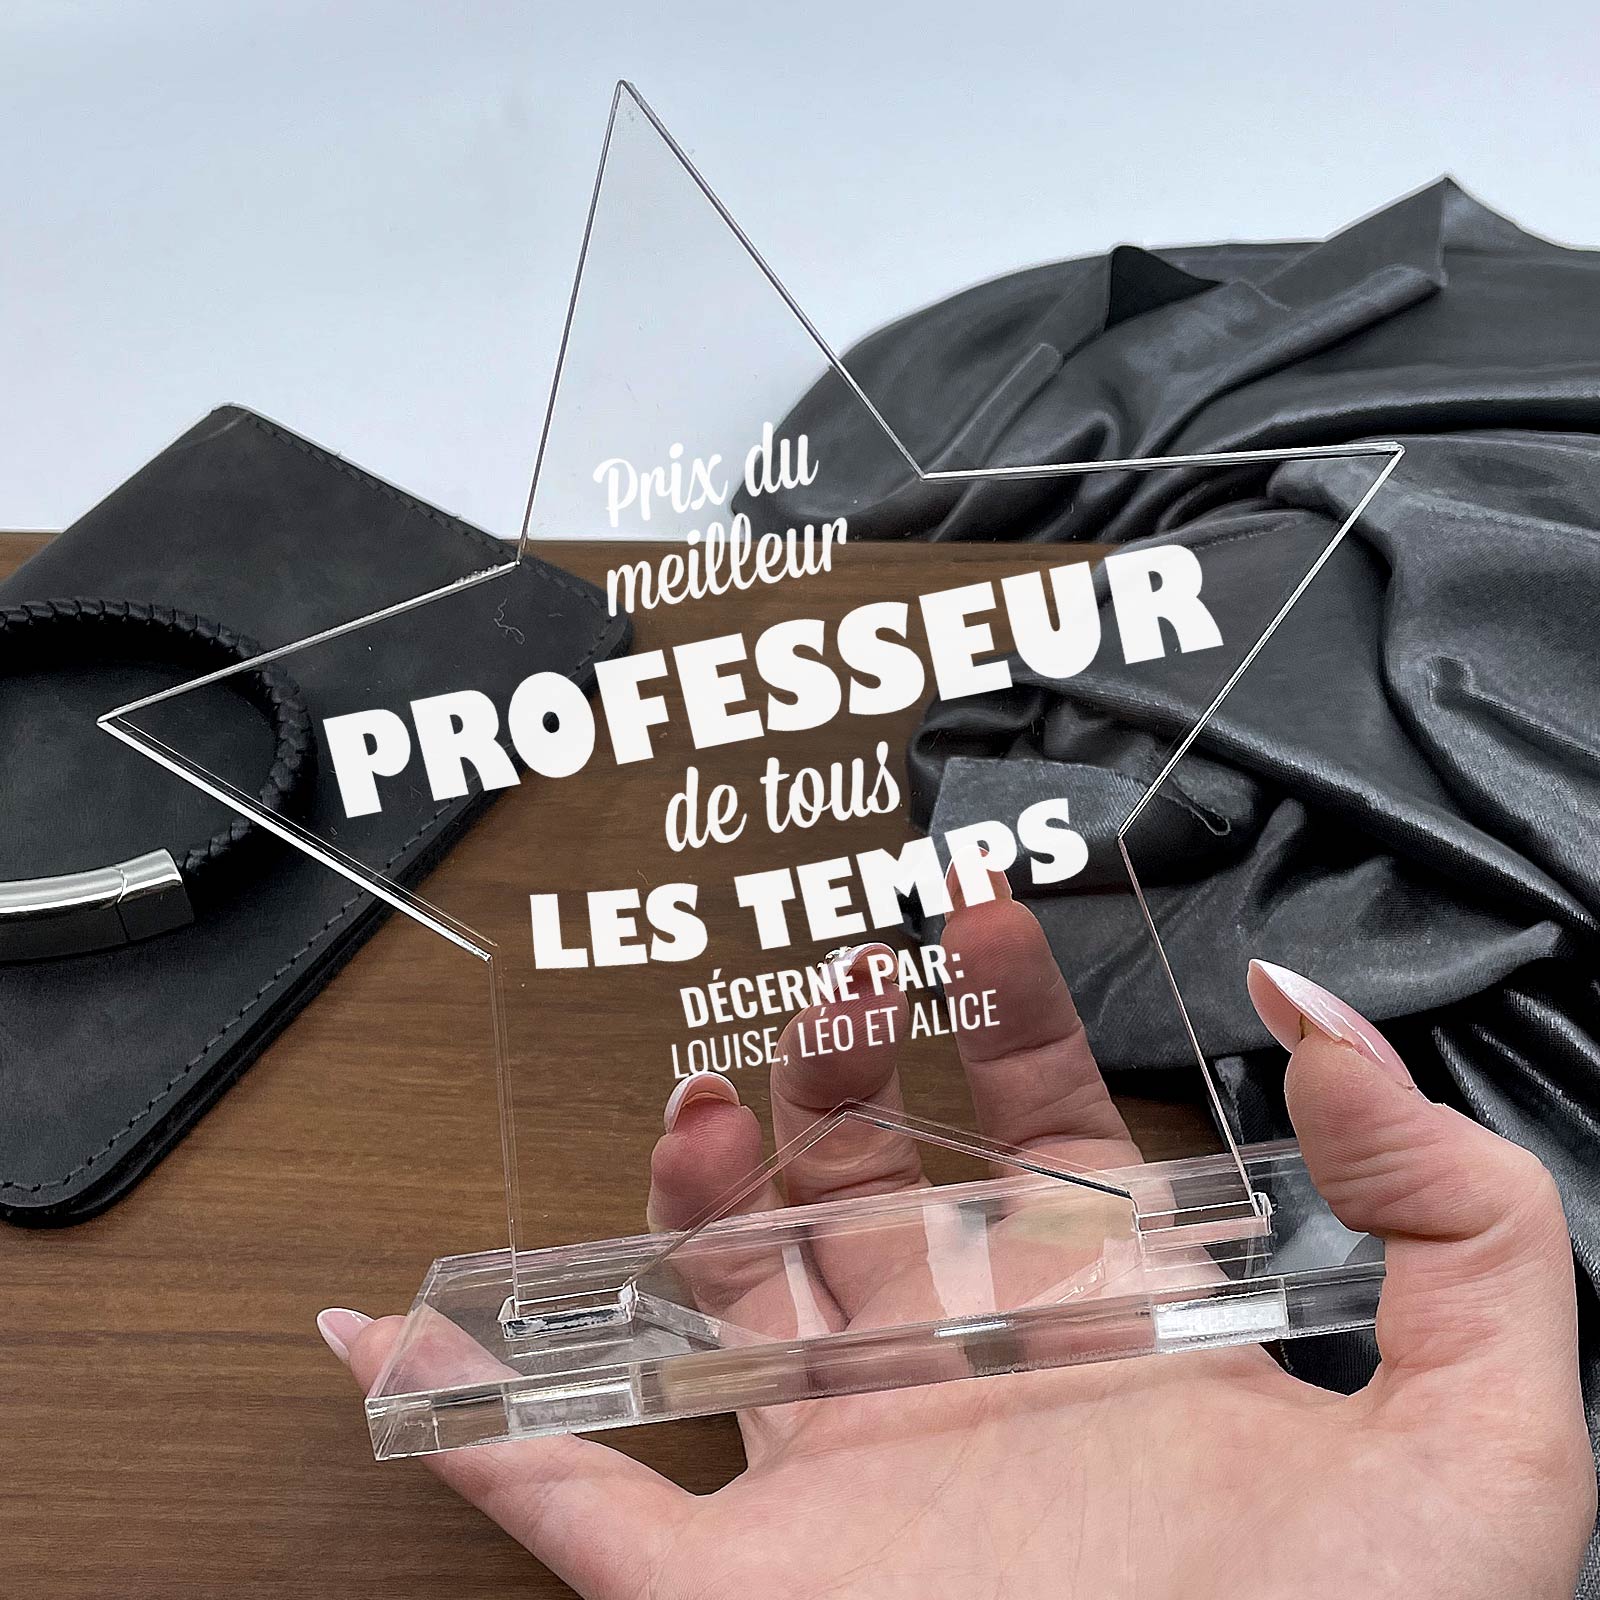 Prix Personnalisé - professeure / professeur